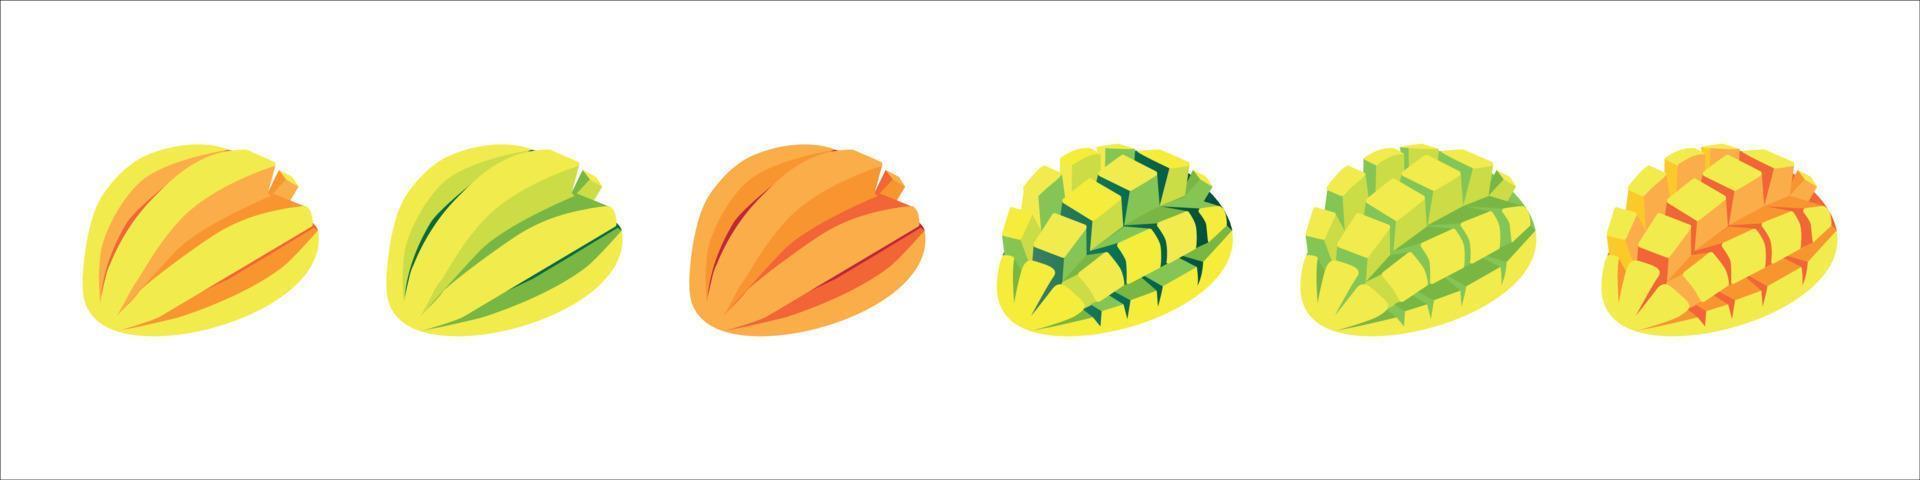 set van verse hele, halve, gesneden segment mango vruchten geïsoleerd op een witte achtergrond. vector